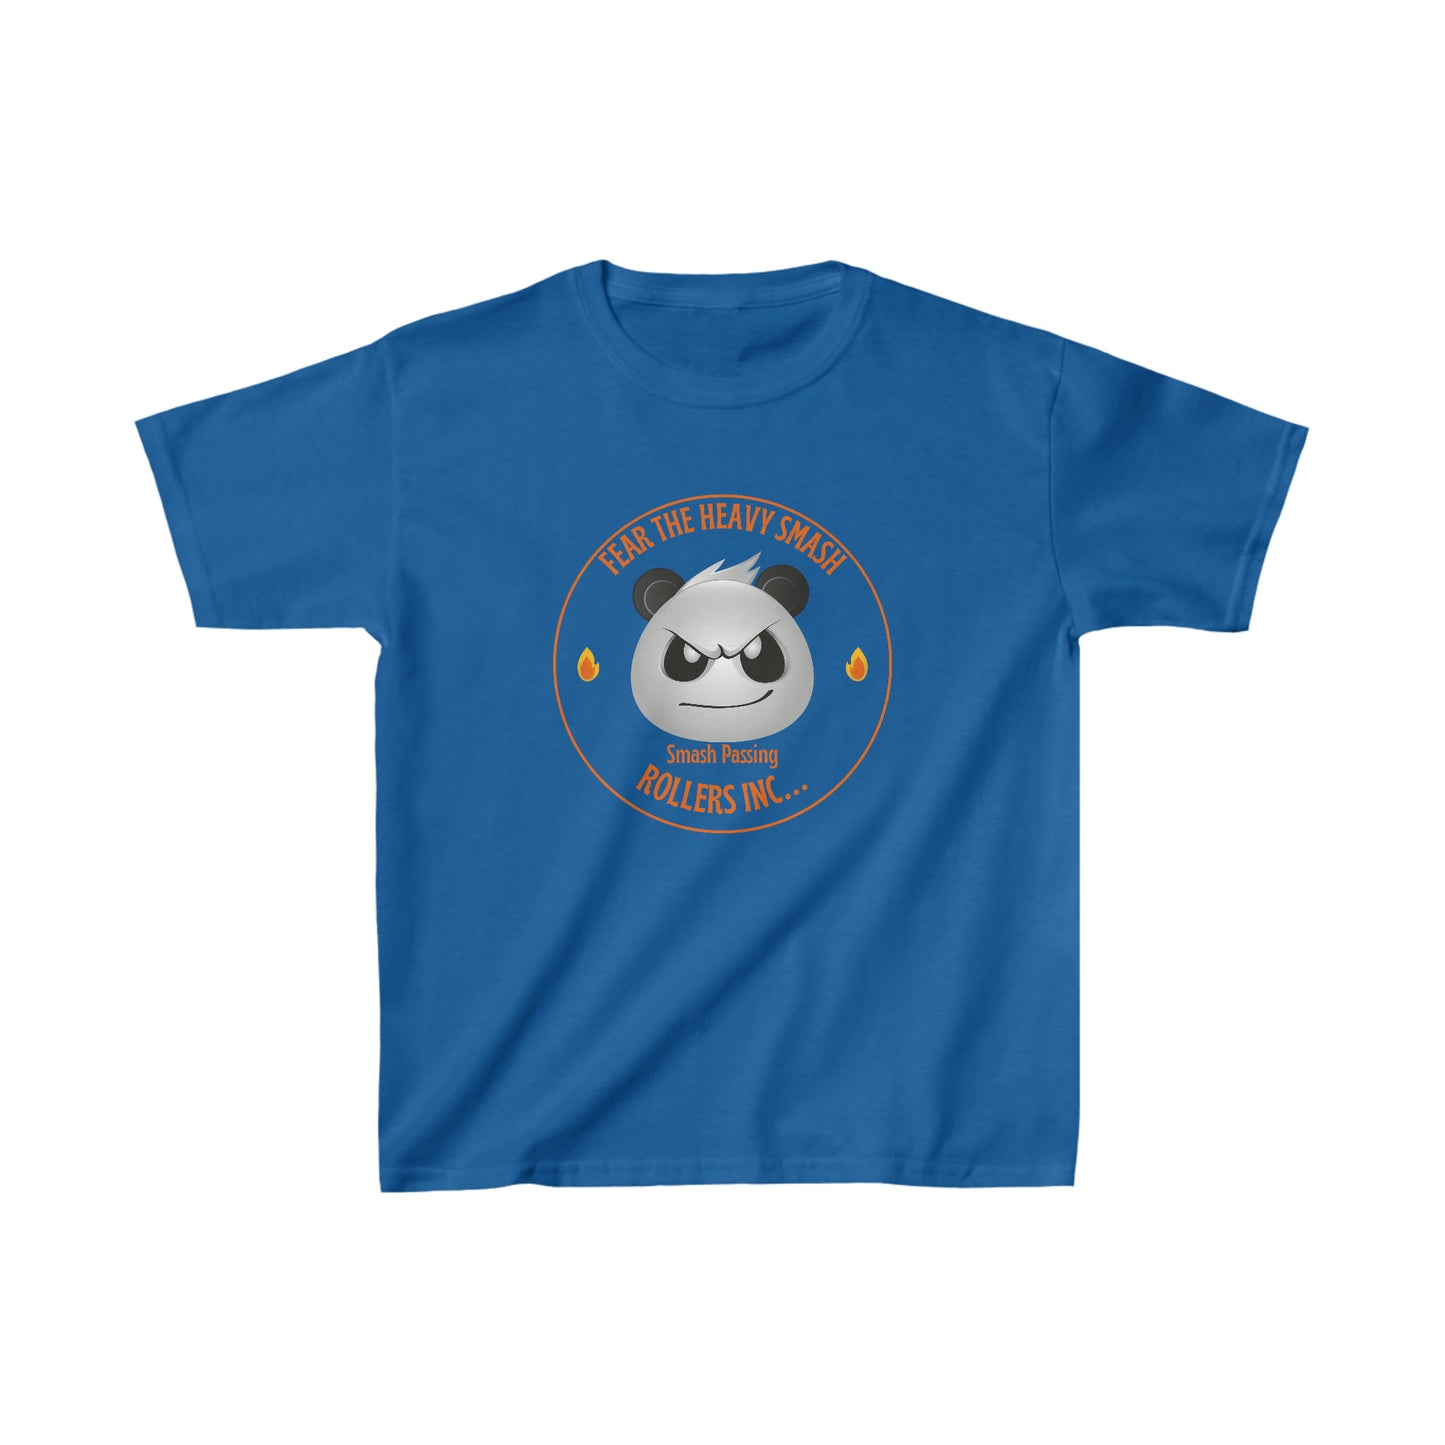 Panda Smash Passing Youth Jiu Jitsu T-Shirt and Jiu Jitsu Apparel